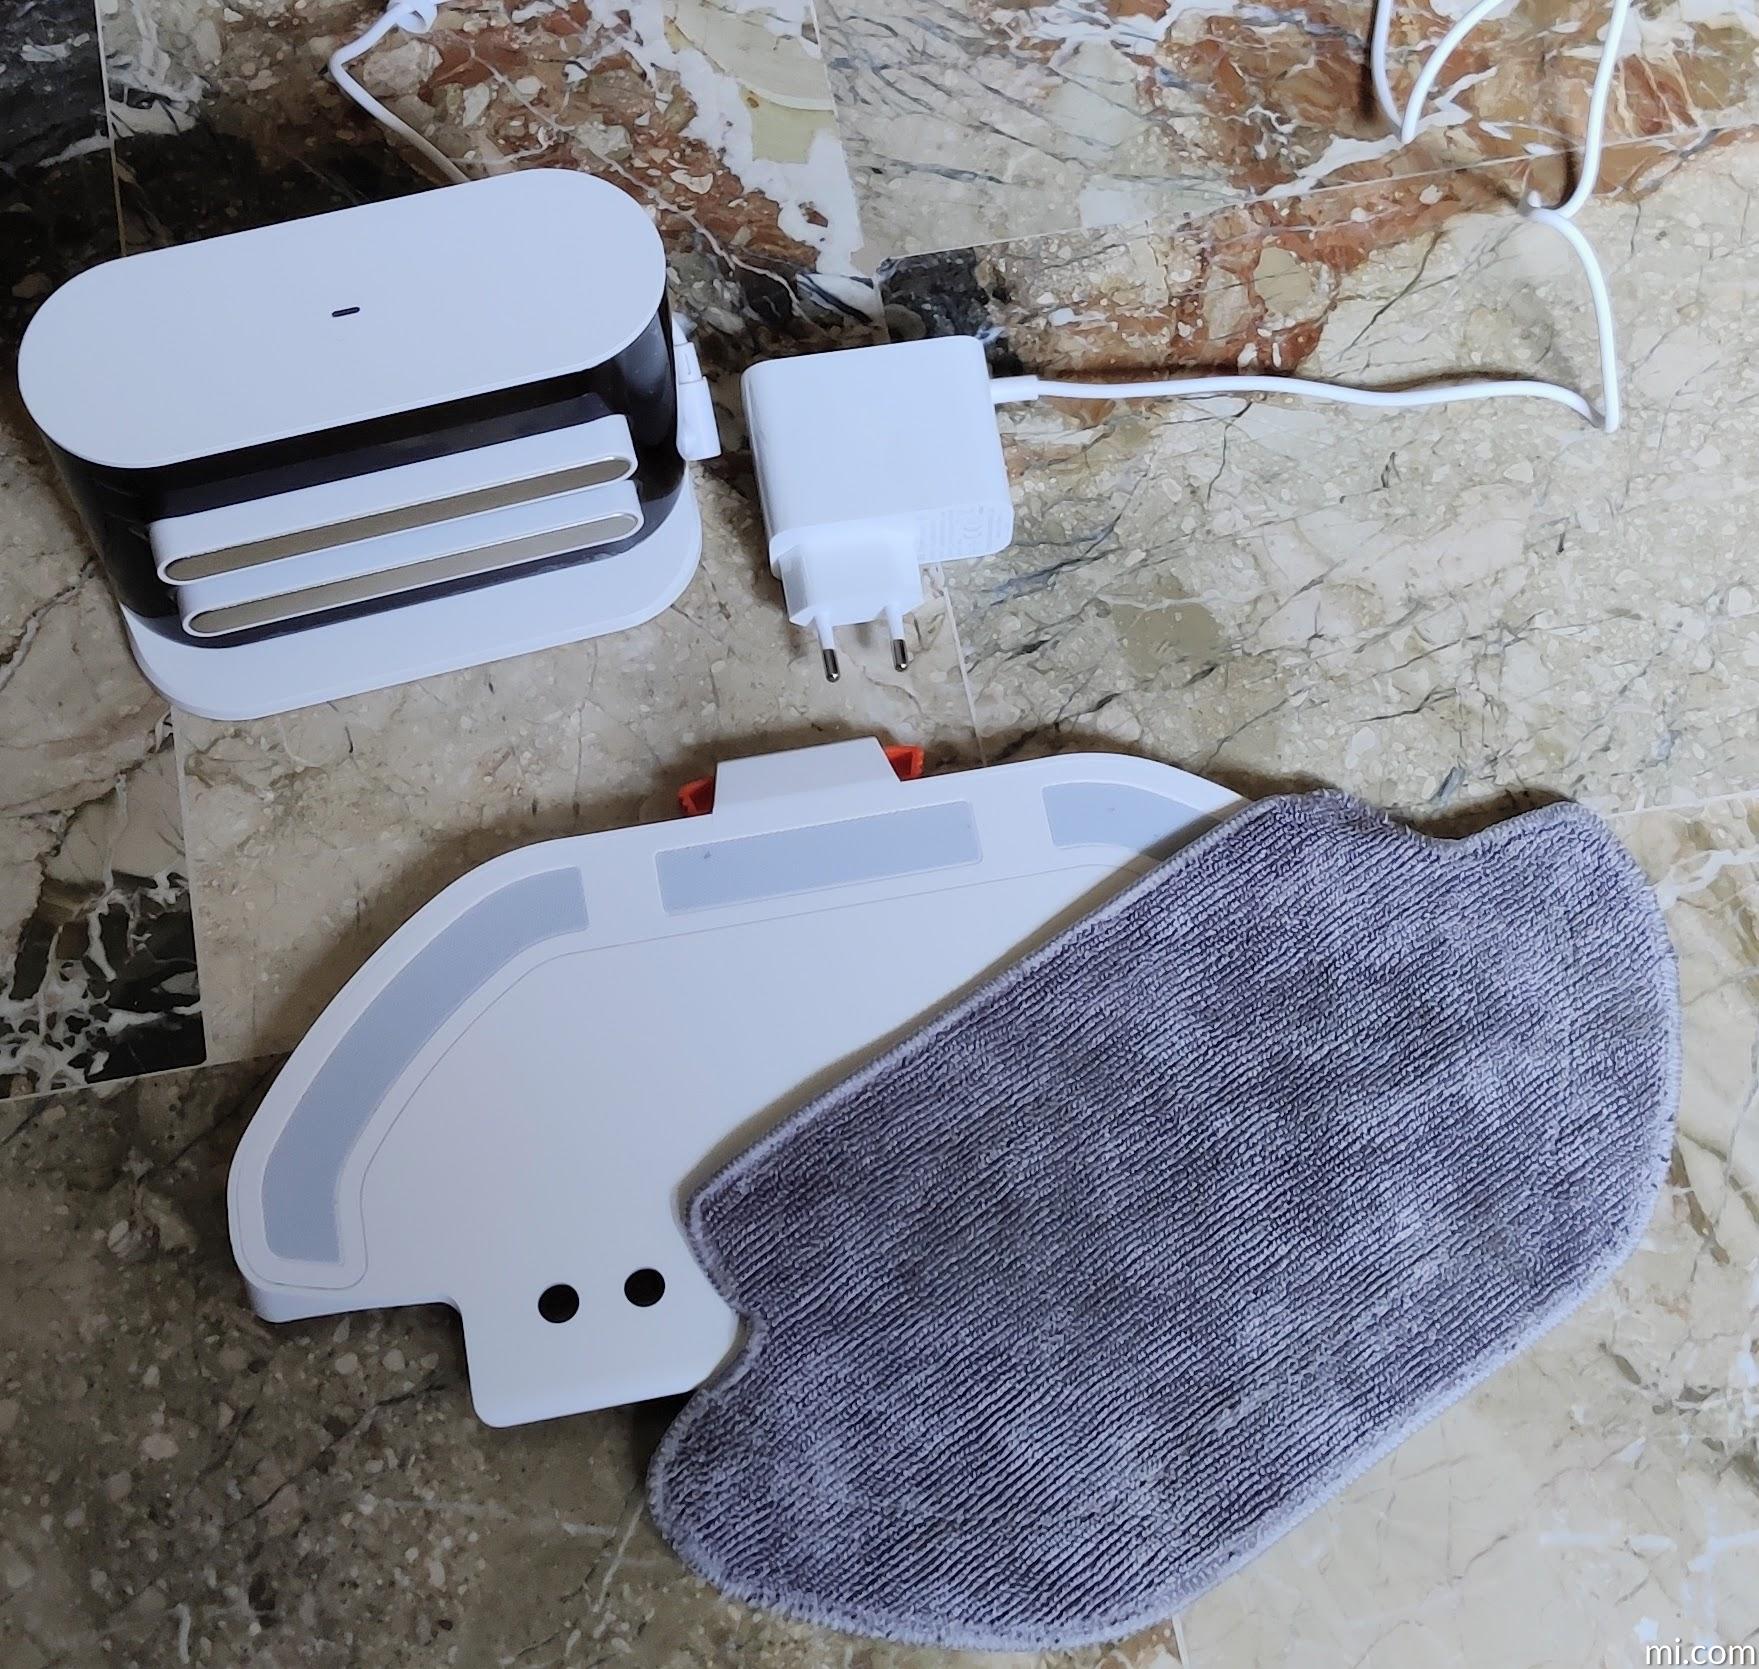 Xiaomi Robot Vacuum-Mop 2S